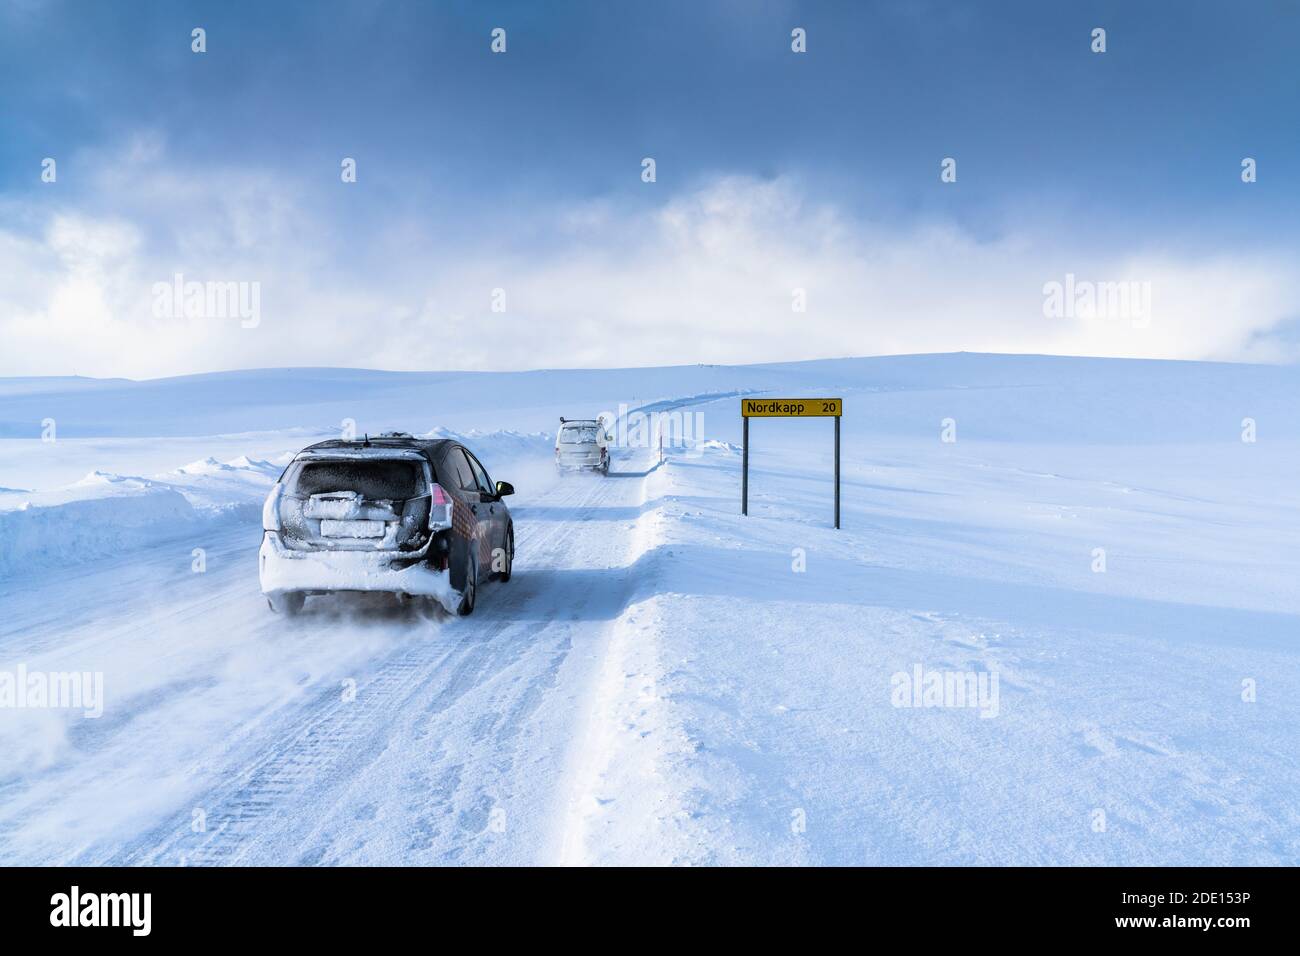 Veicoli fuoristrada che guidano sulla strada ghiacciata verso Nordkapp (Capo Nord) nella neve profonda, Troms og Finnmark, Norvegia settentrionale, Scandinavia, Europa Foto Stock